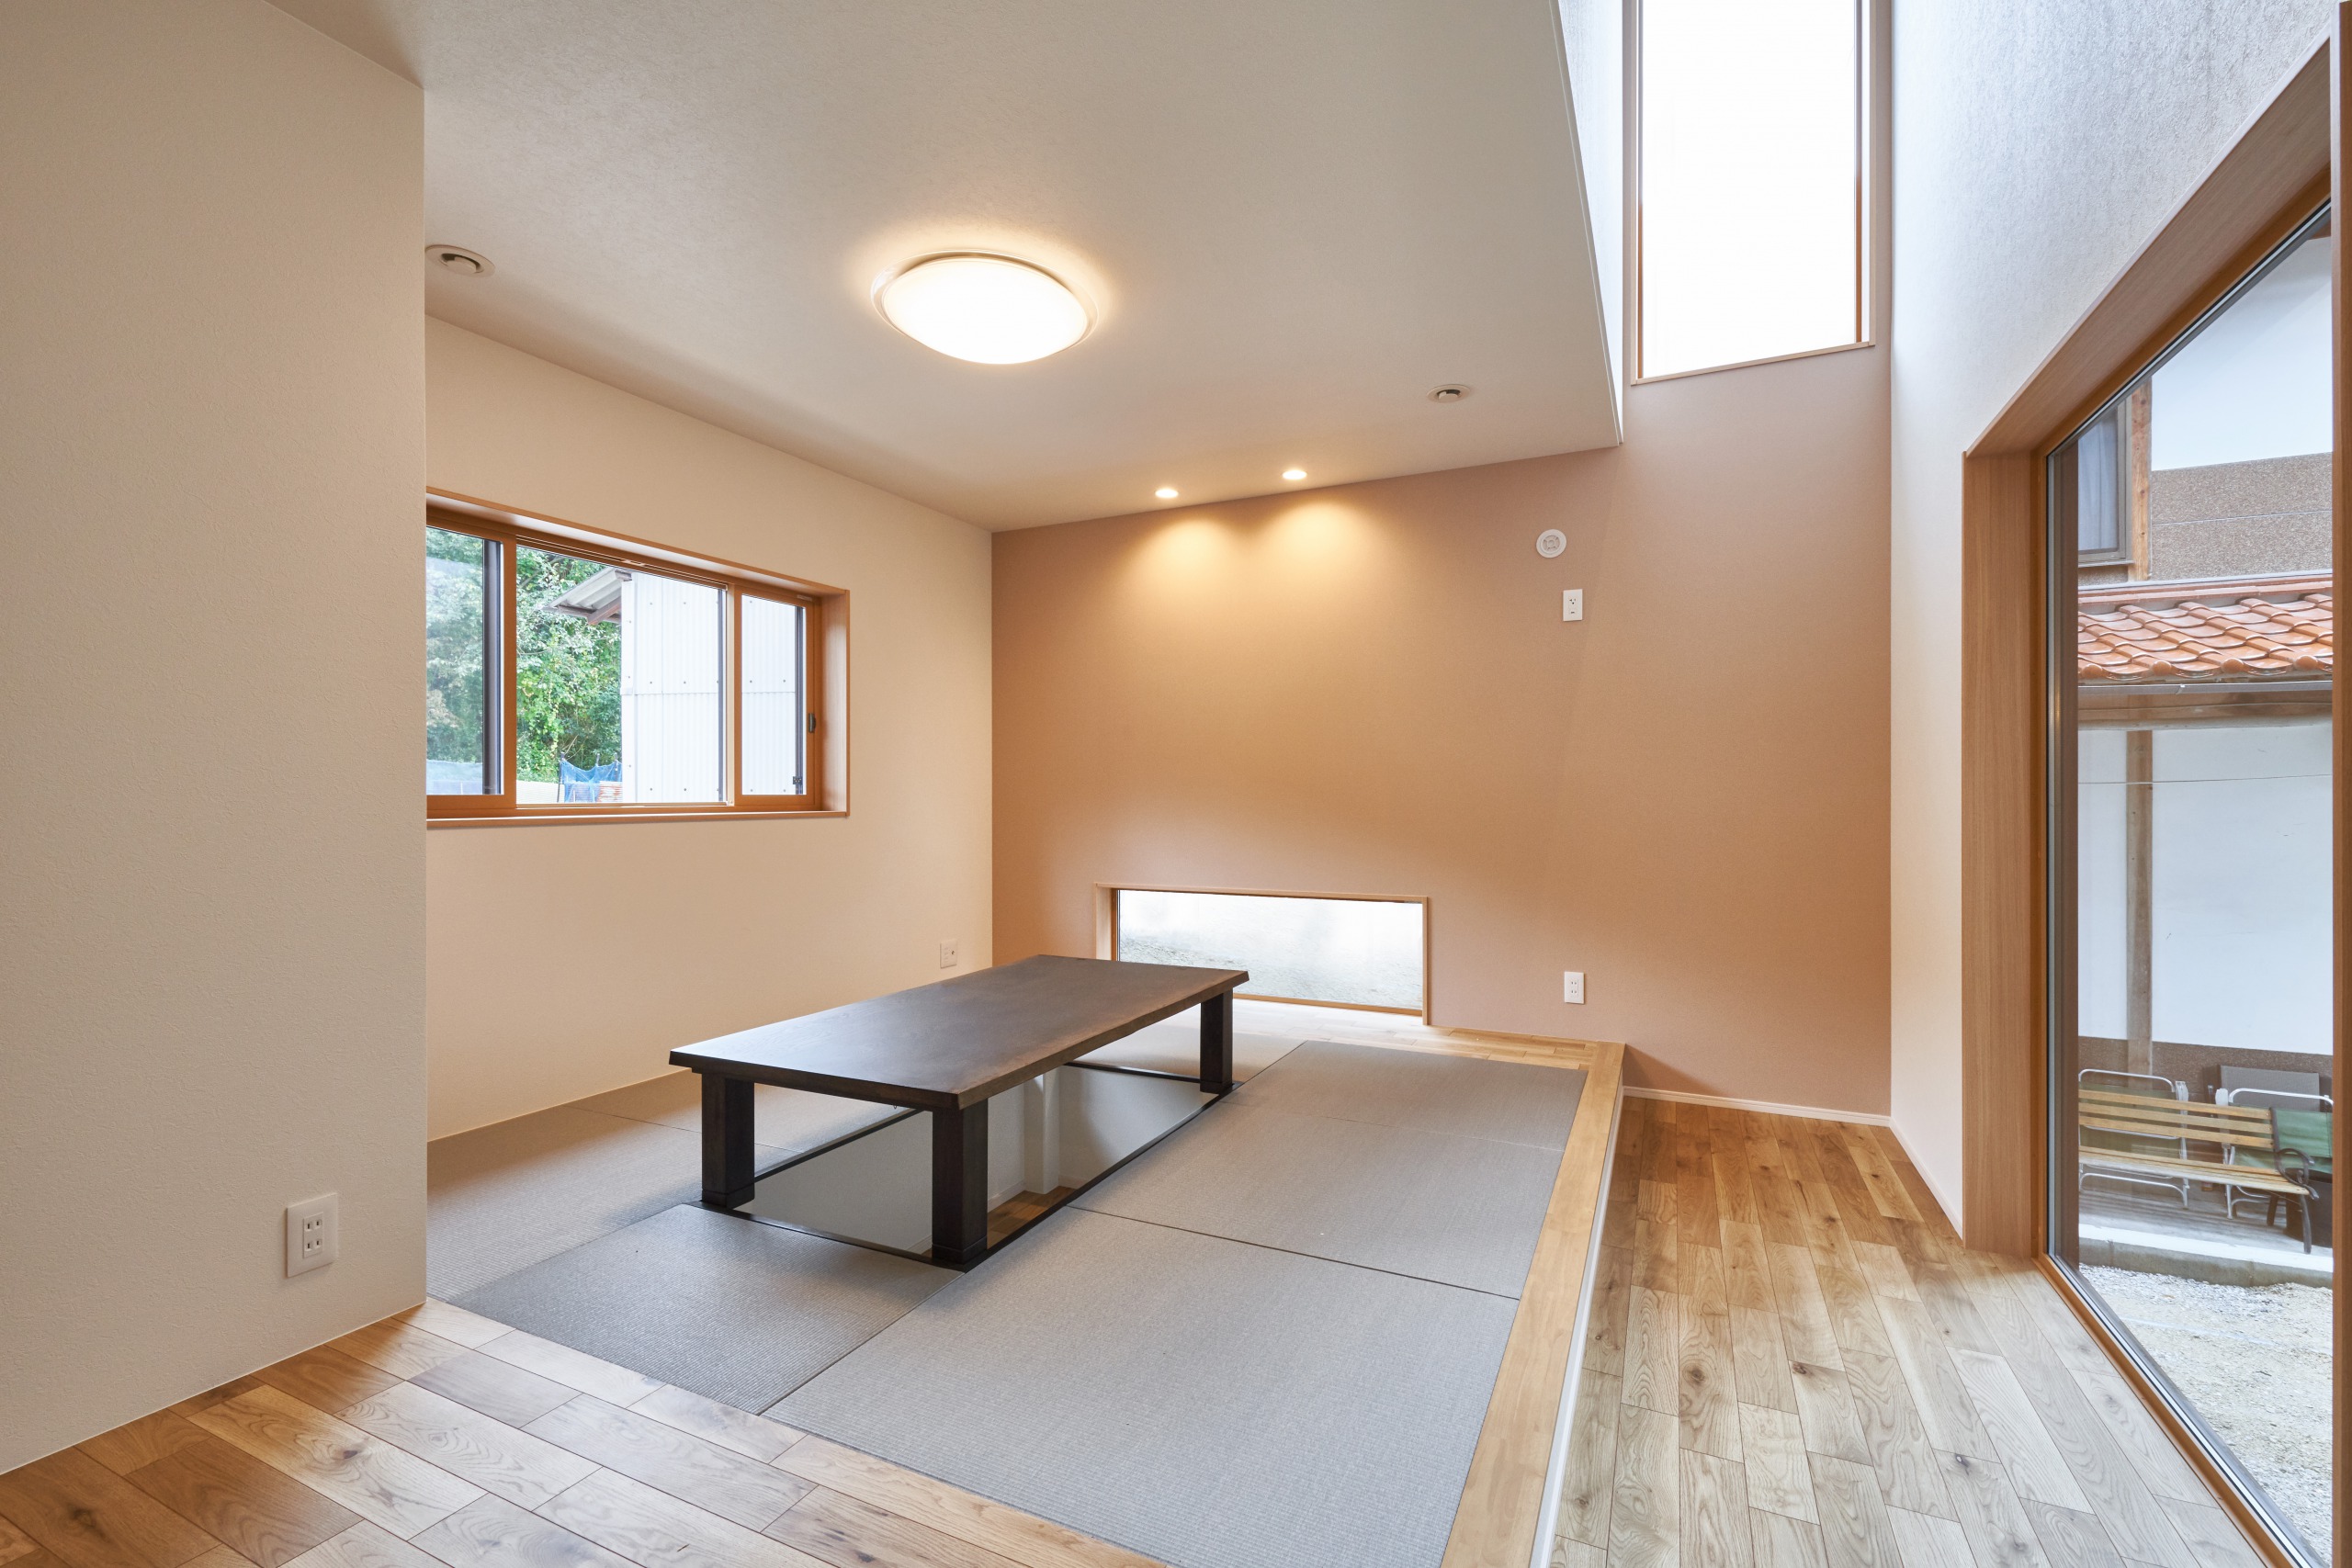 ダイニングキッチン横の和室スペース。一段高くし、掘りごたつを配置することで特別なスペースに。